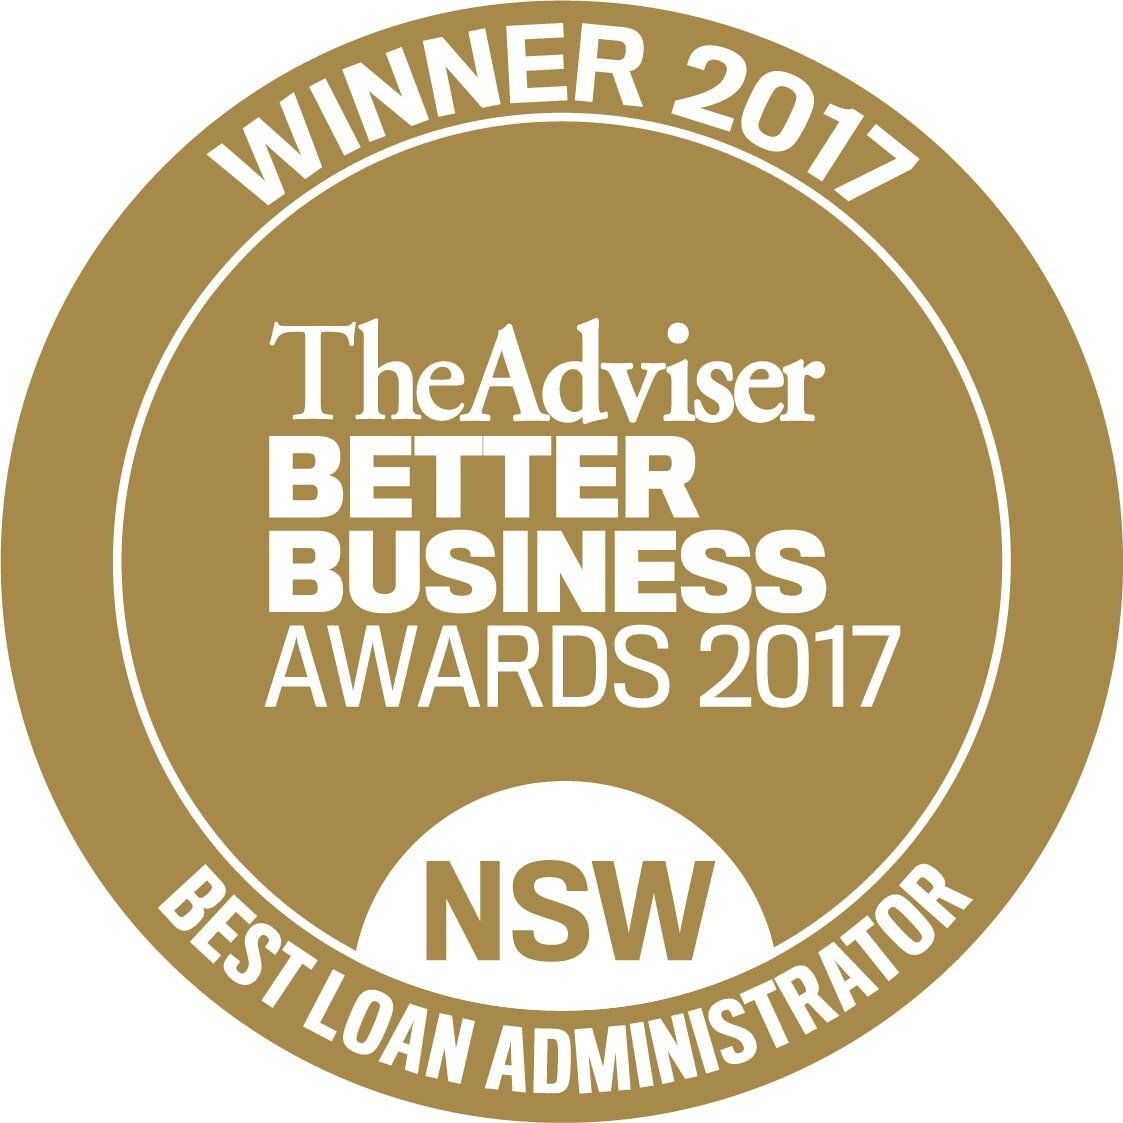 NSW Best Loan Administrator